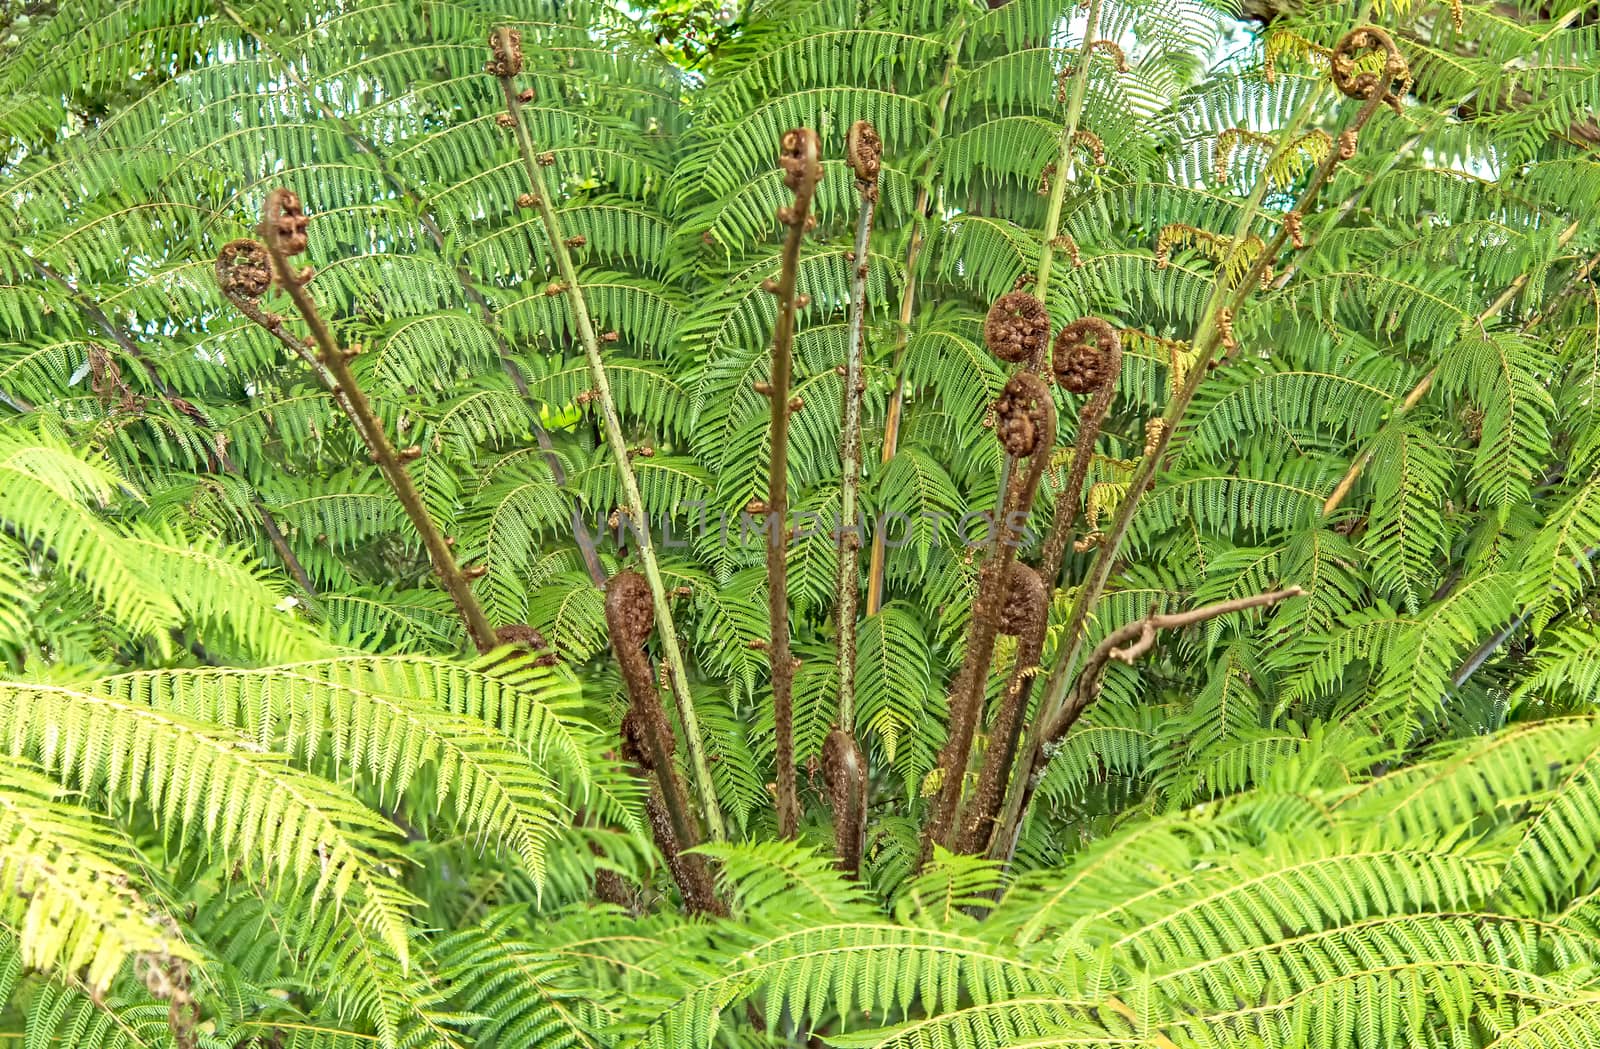 New Zealand fern koru growing in botany garden